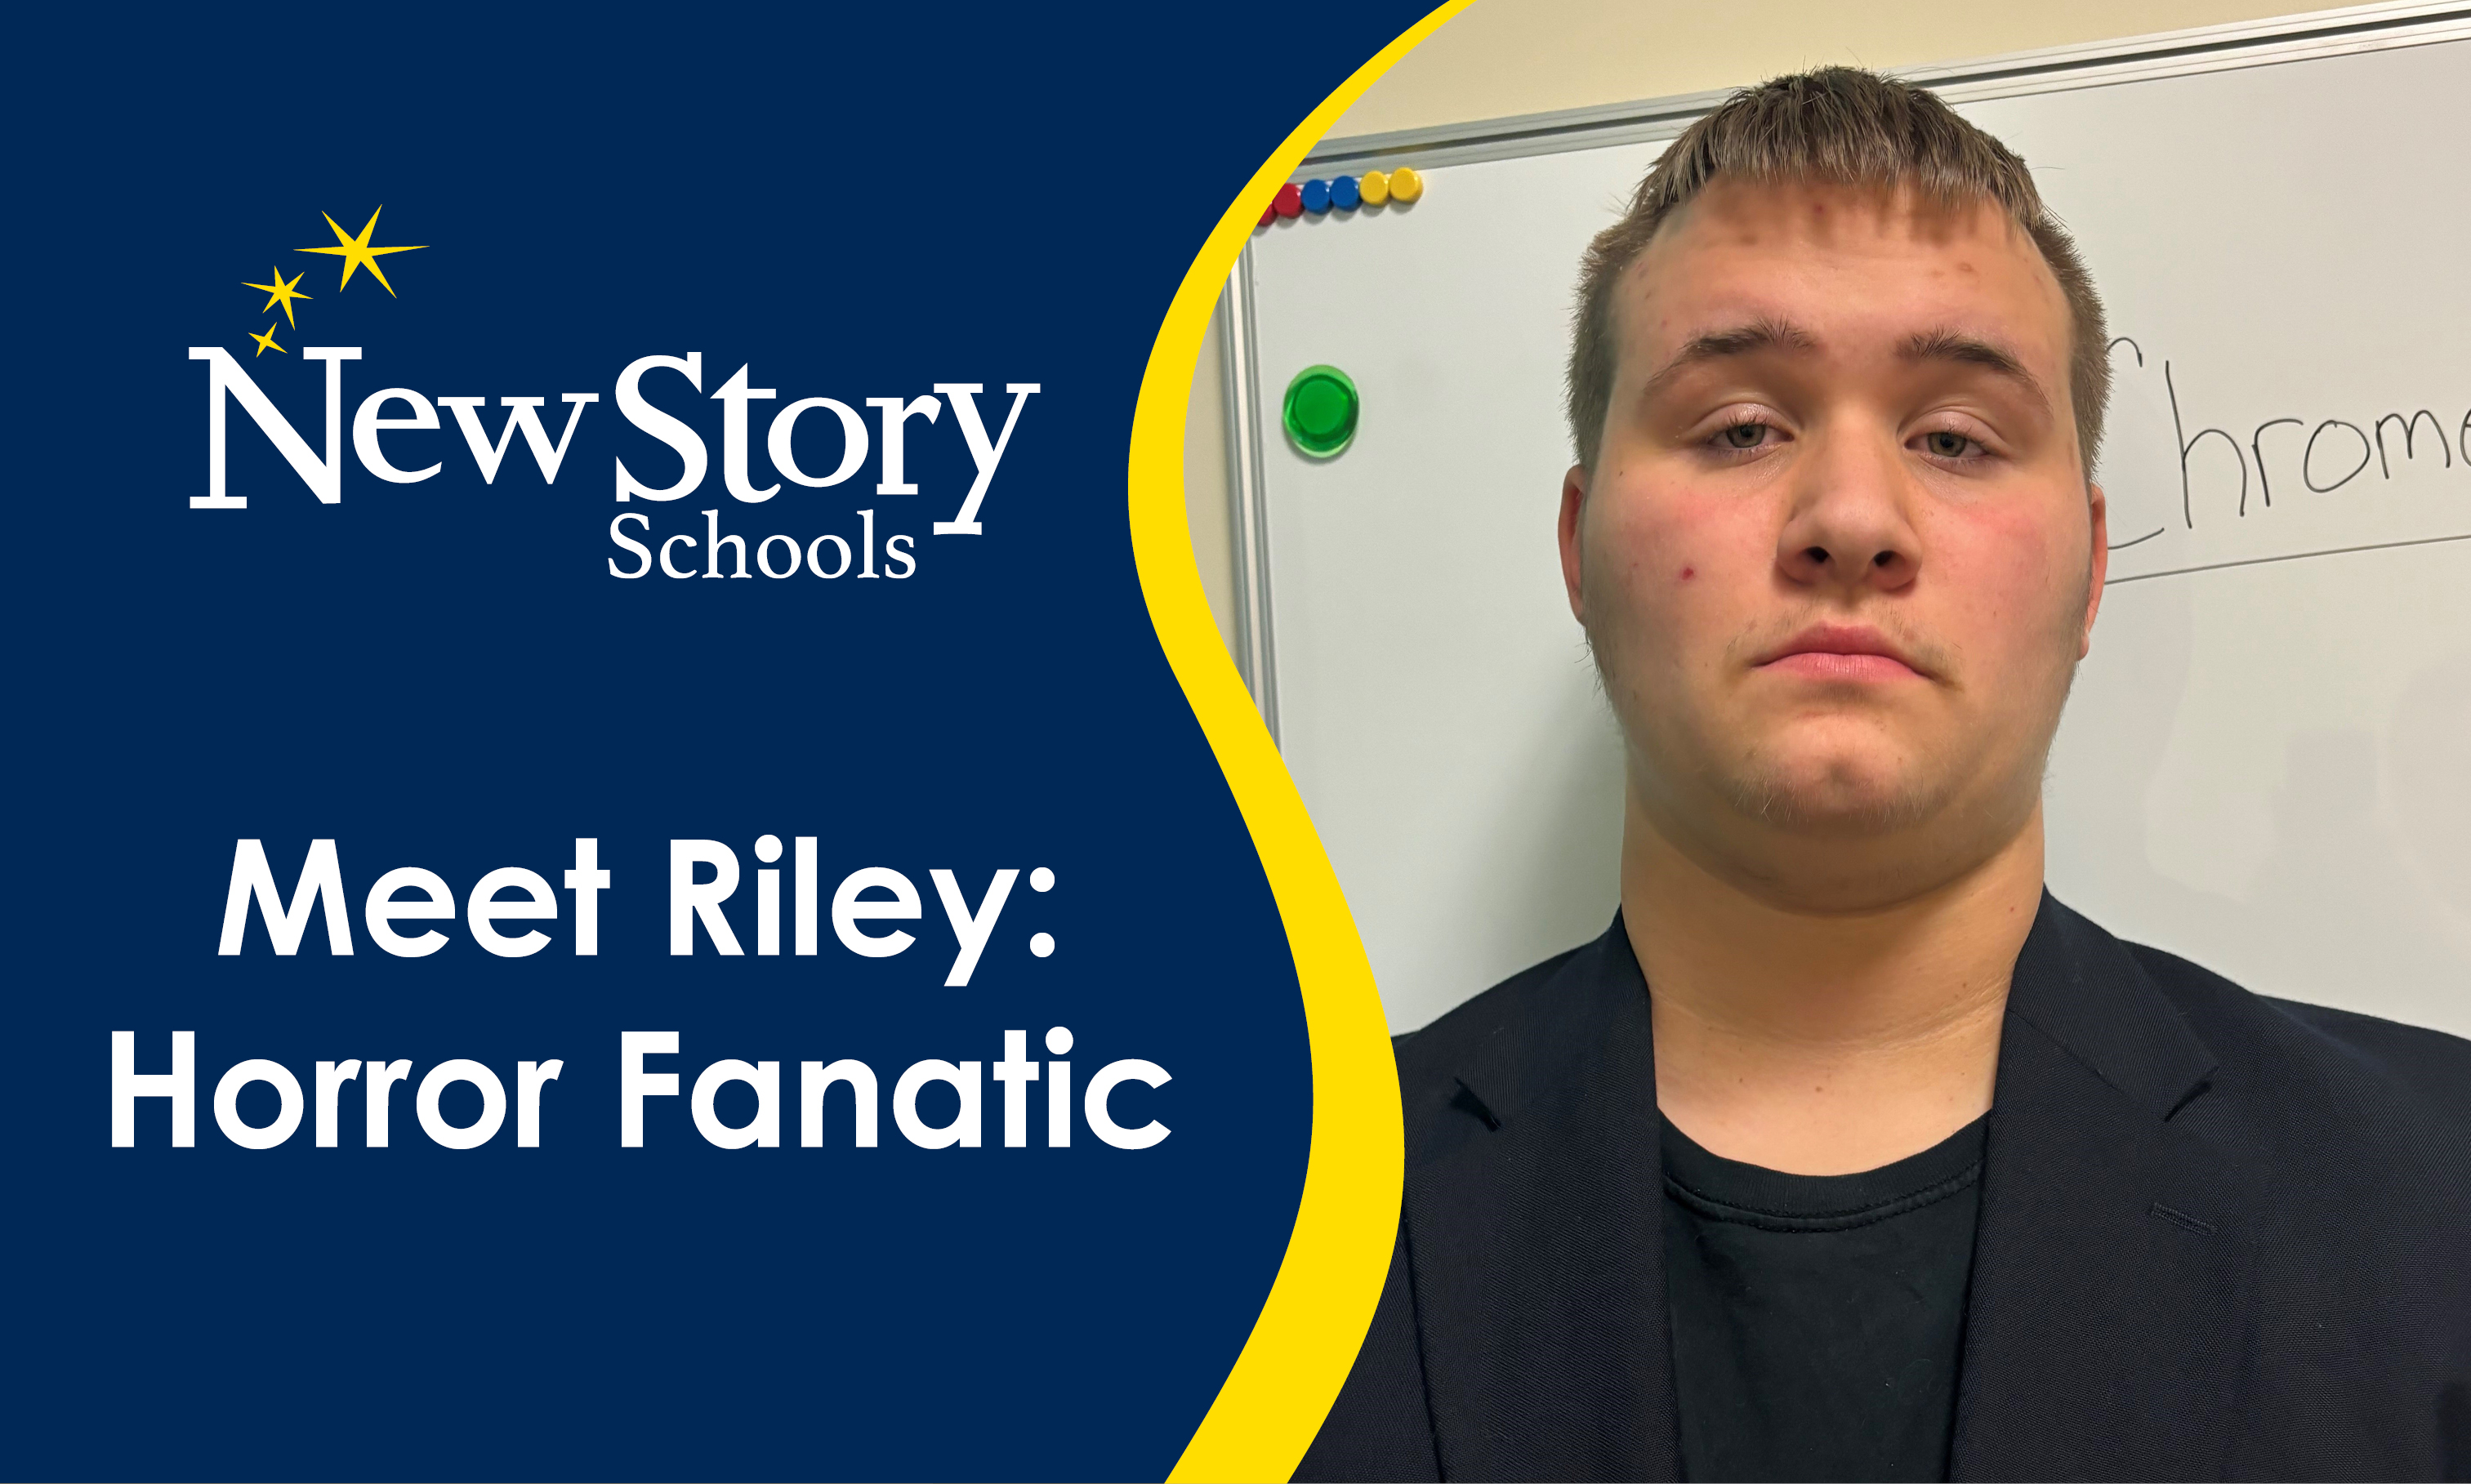 Meet Riley: Horror Fanatic